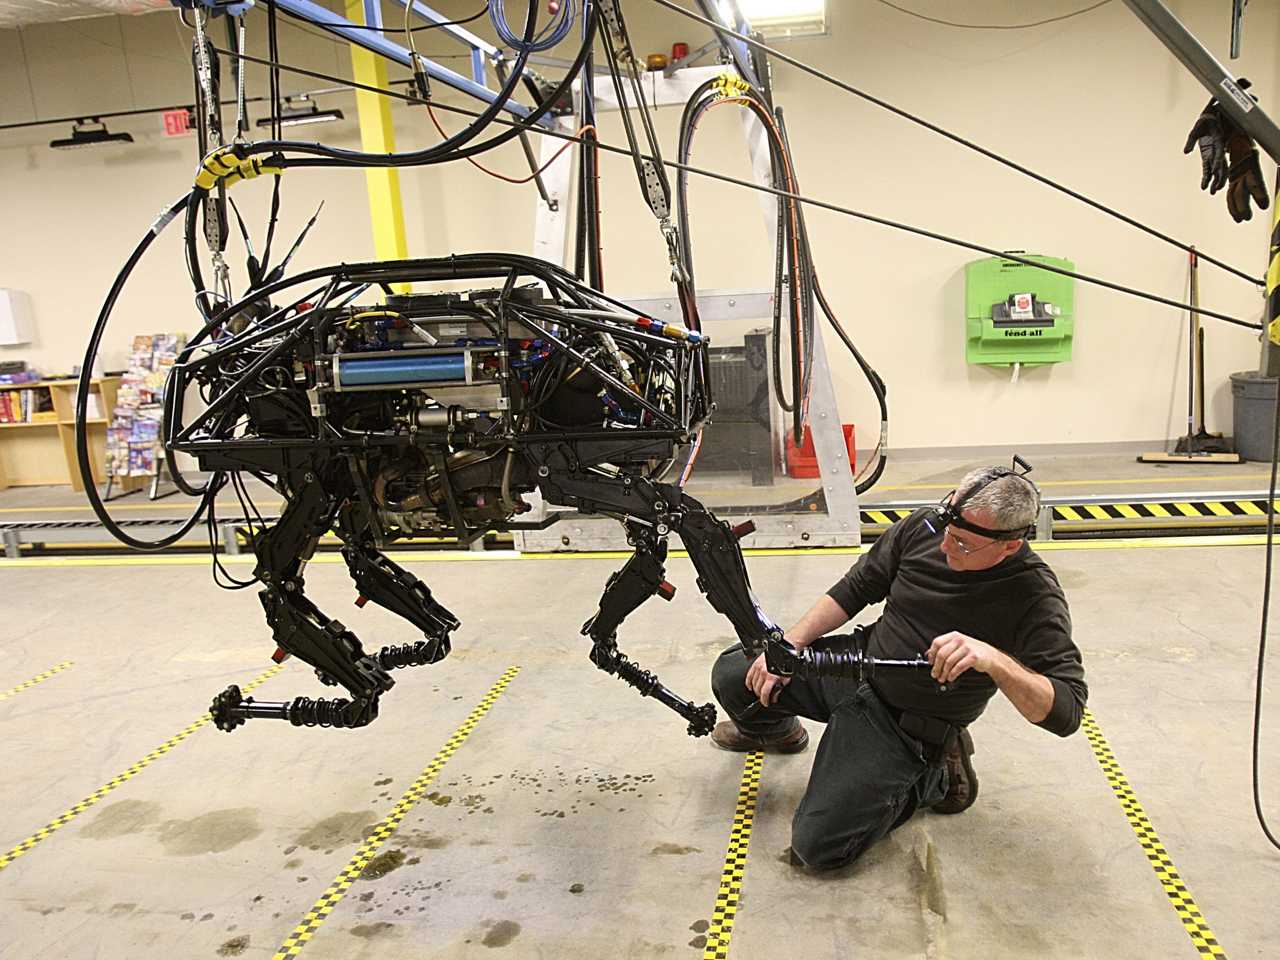 A man repairs a quadruped robot.